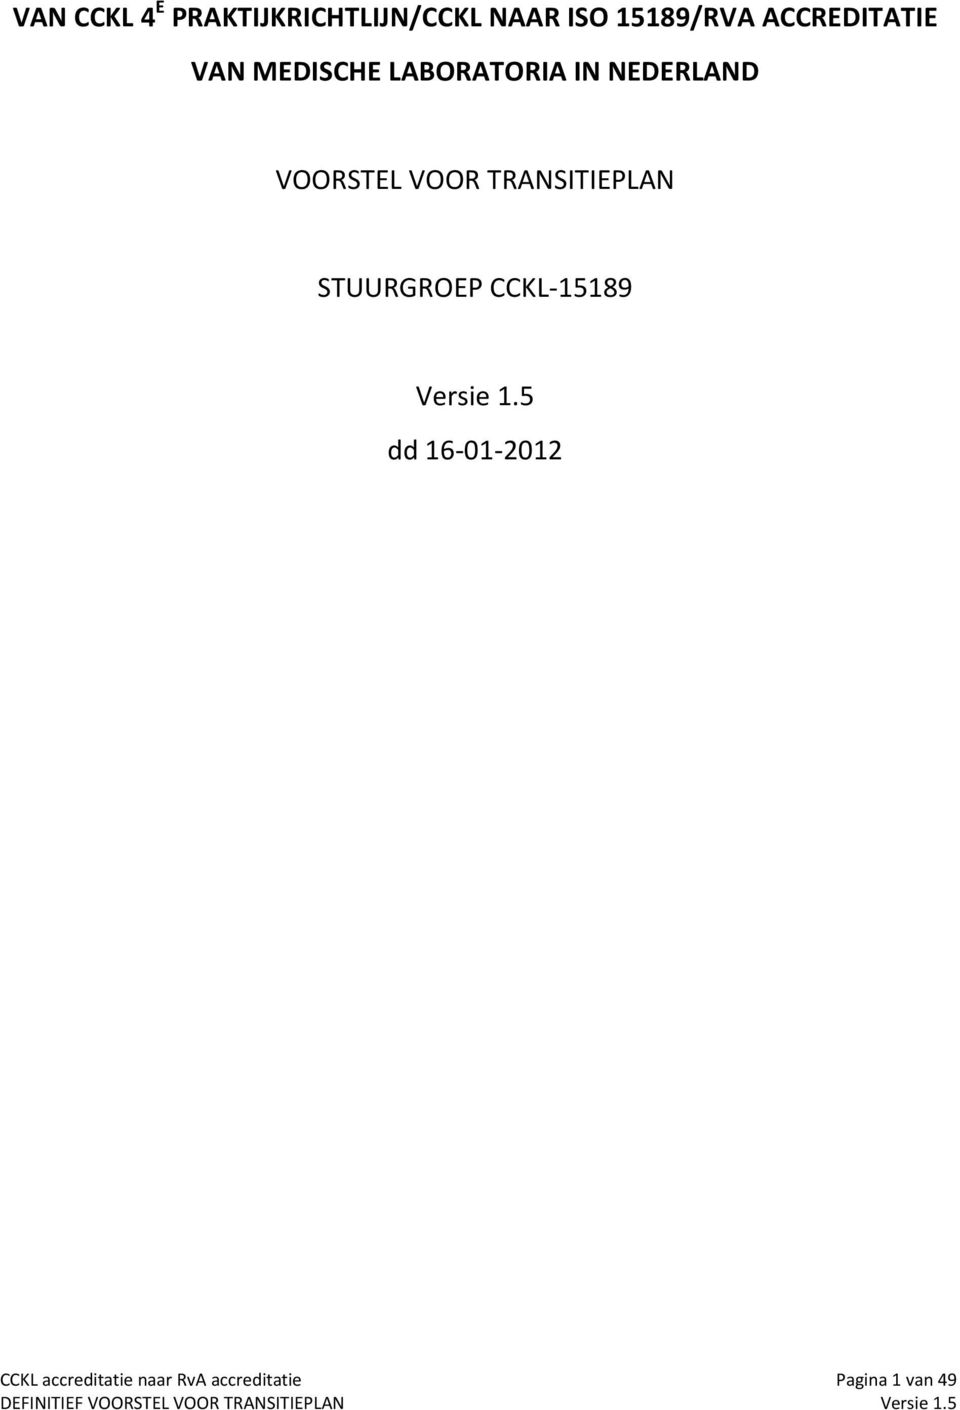 VOORSTEL VOOR TRANSITIEPLAN STUURGROEP CCKL 15189 Versie 1.